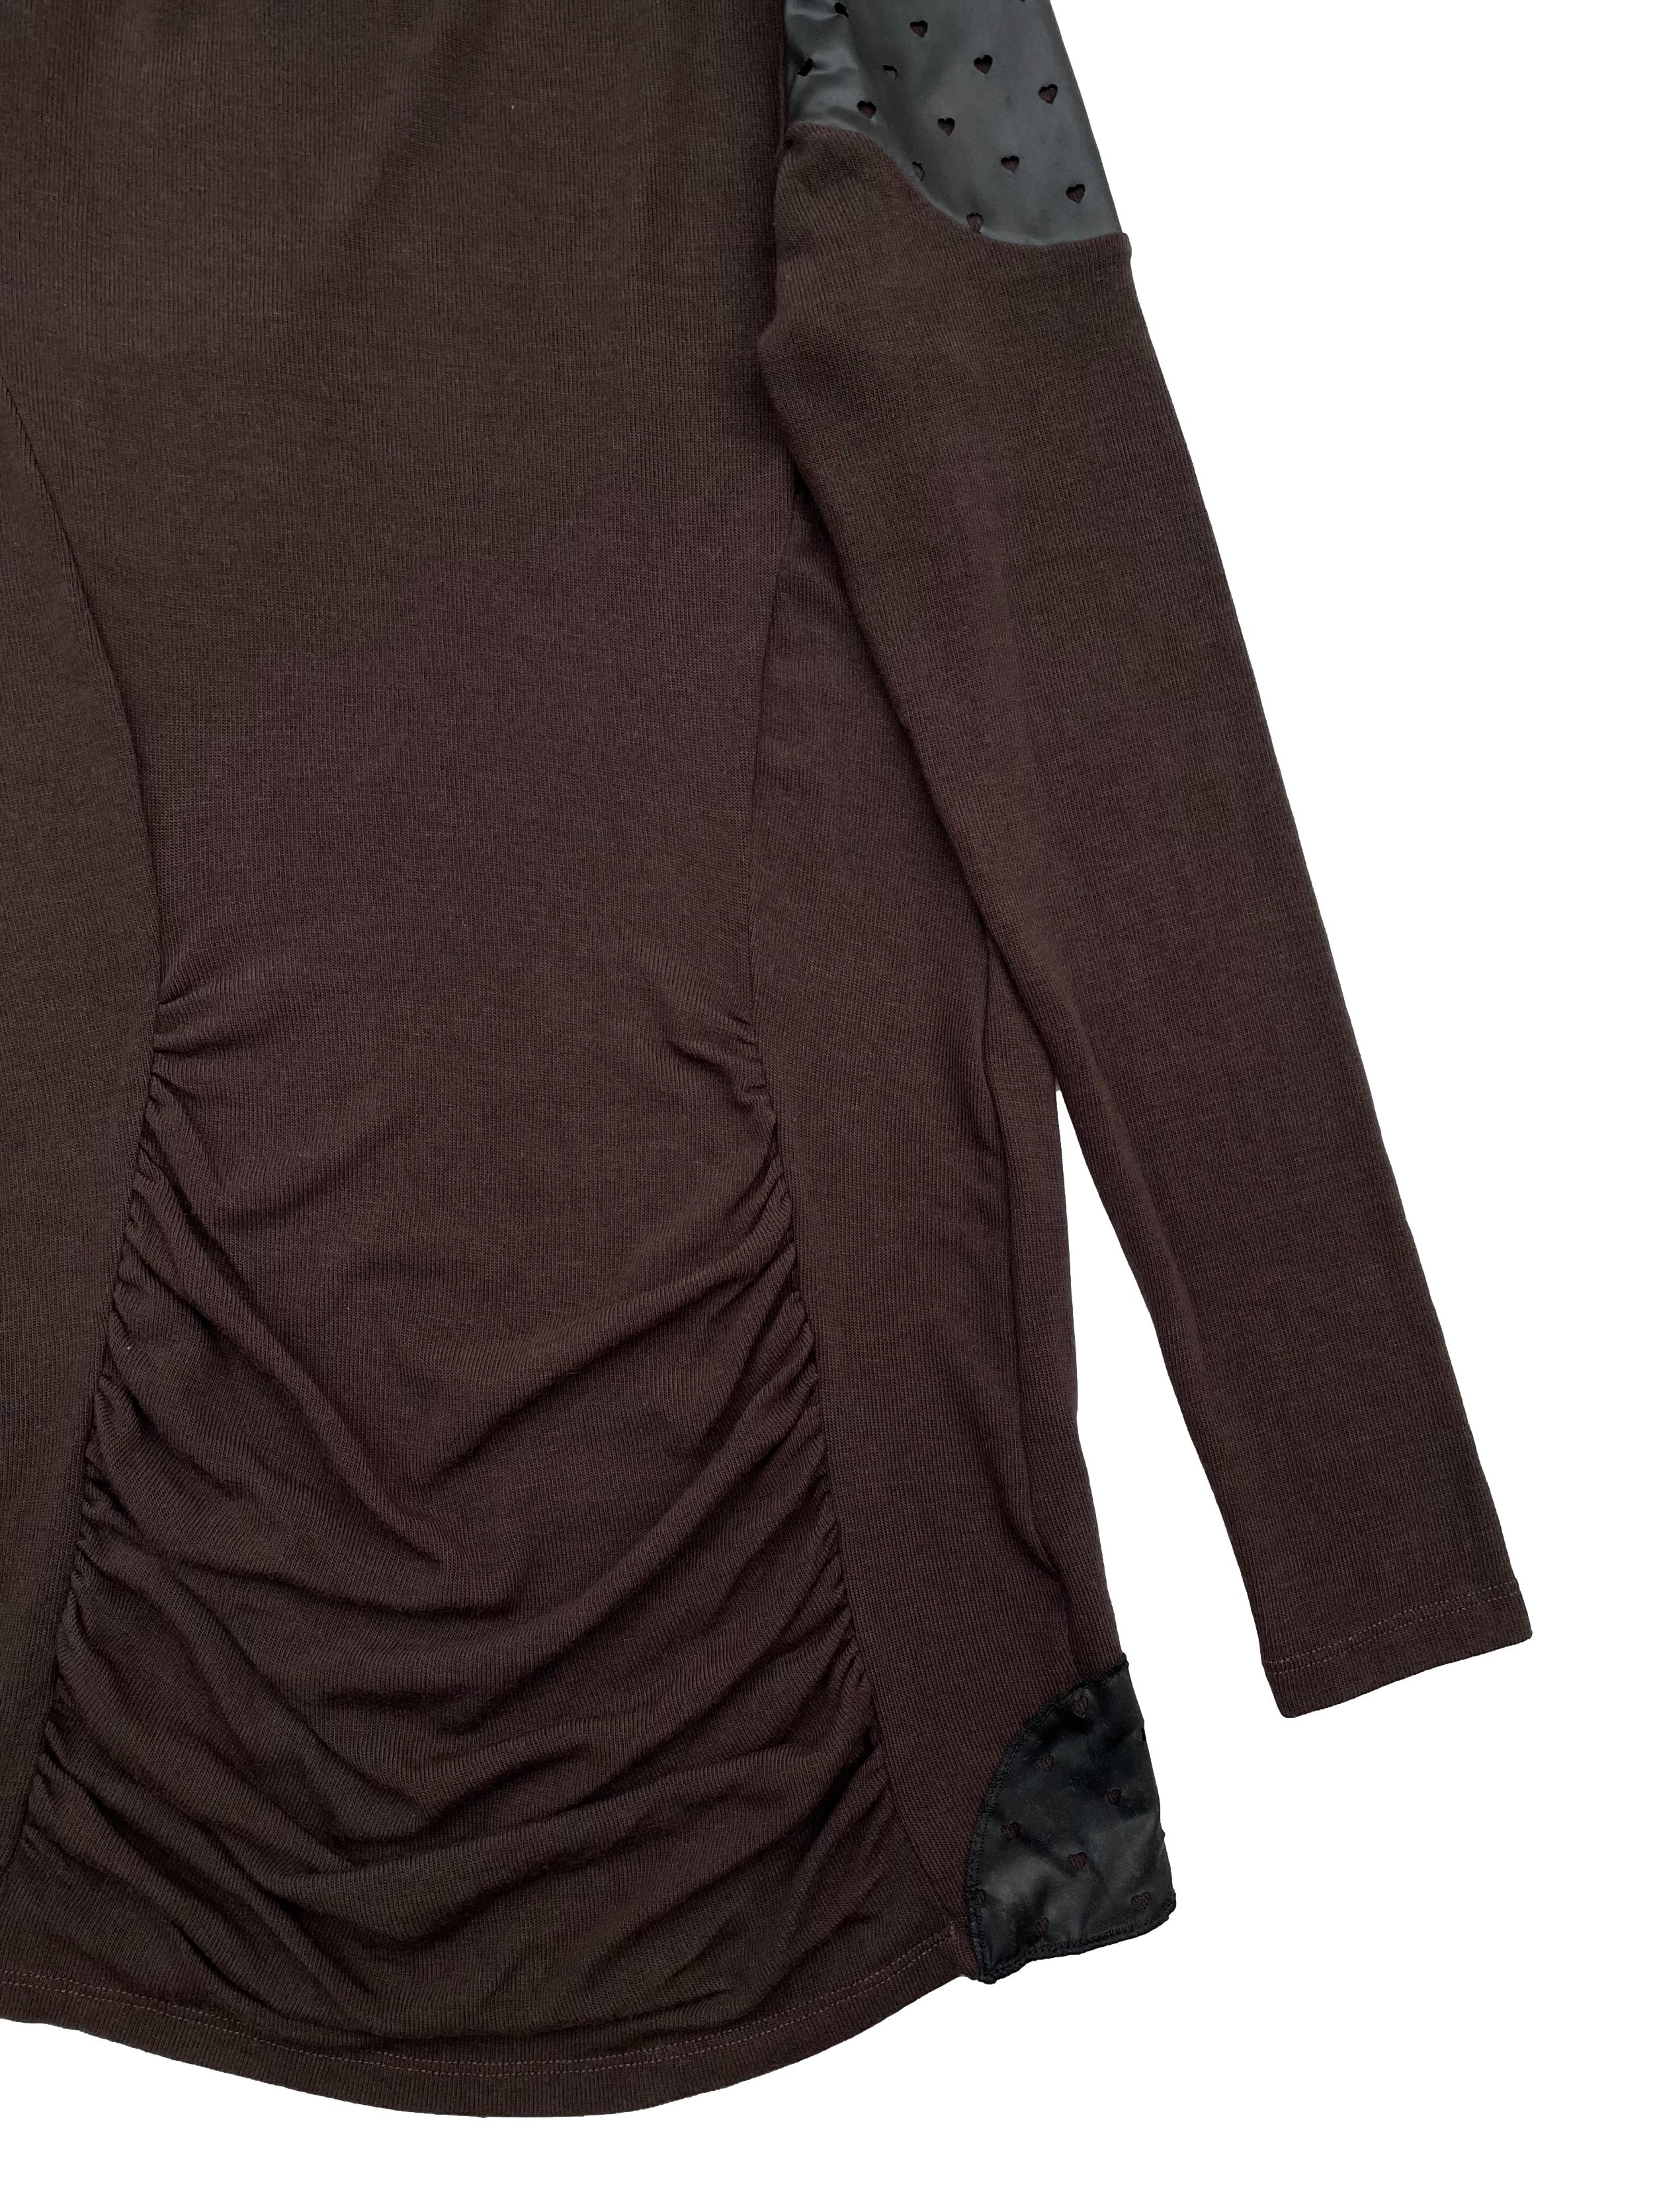 Chompa delgada Domo marrón con aplicaciones tipo cuerina, espalda con drapeado cerca a la basta. Busto 85cm Largo 70-80cm. Nuevo con etiqueta